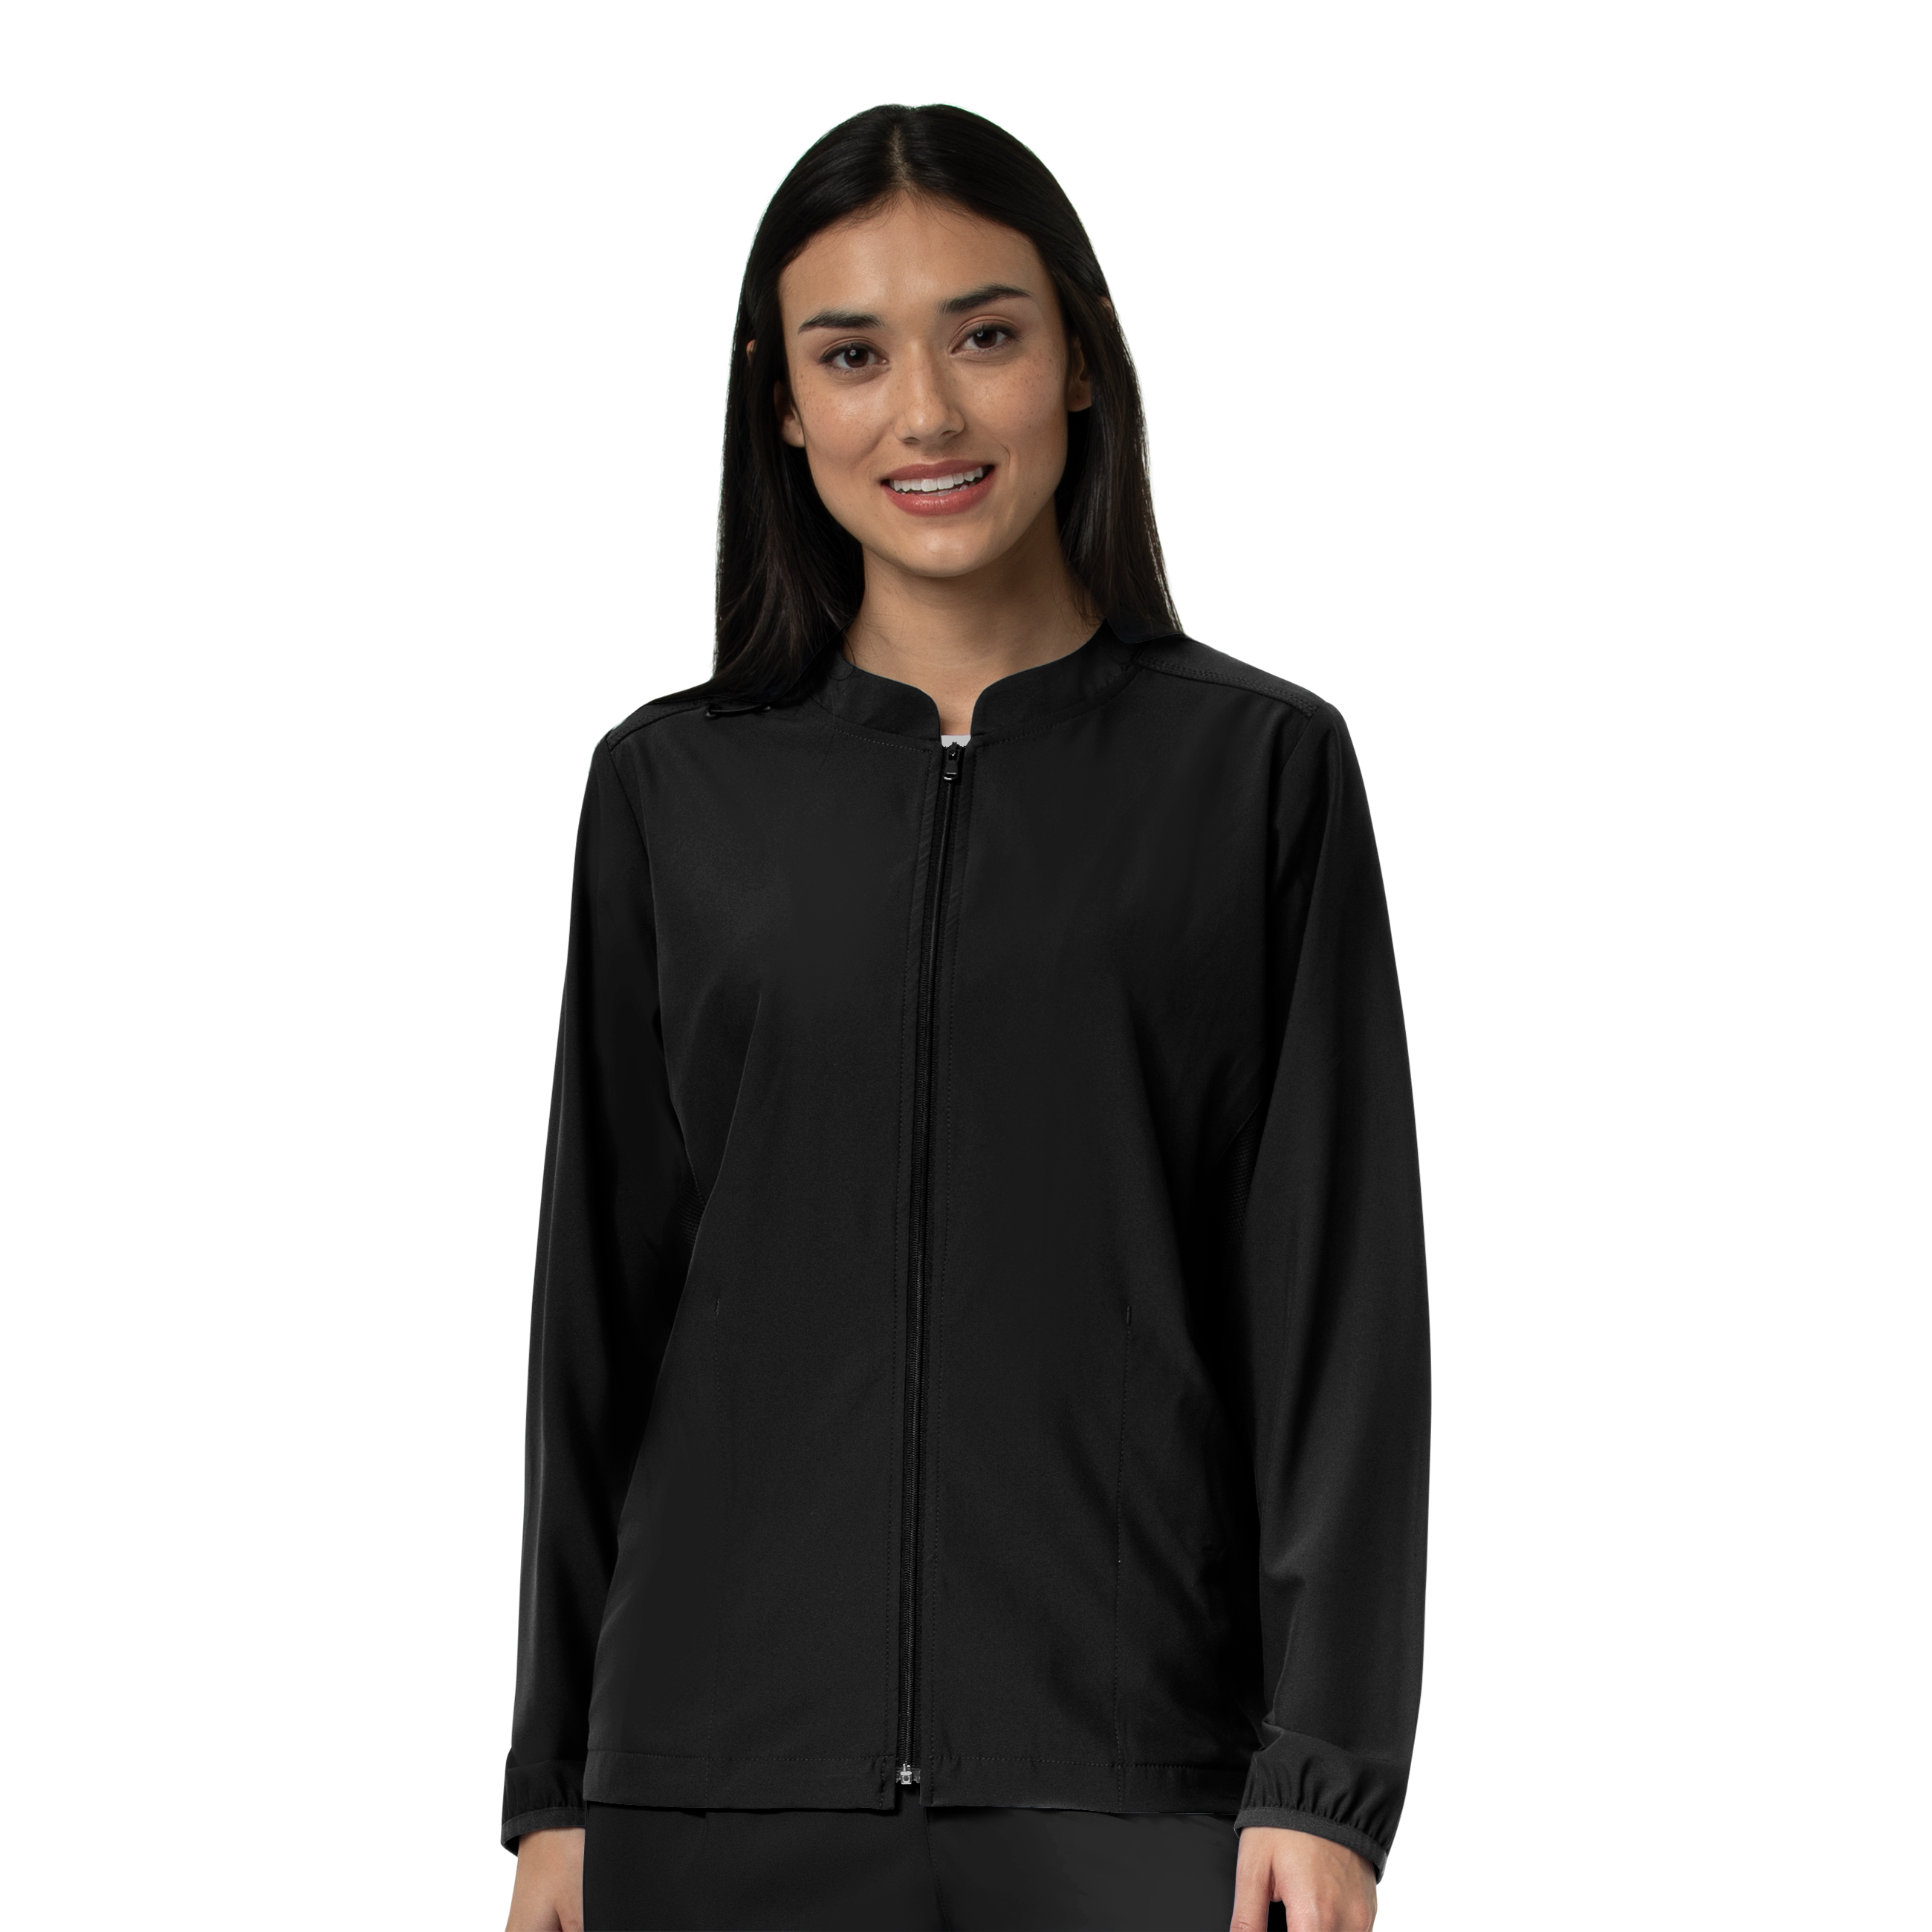 Buy Women's Zip Front Jacket - Carhartt Online at Best price - NC